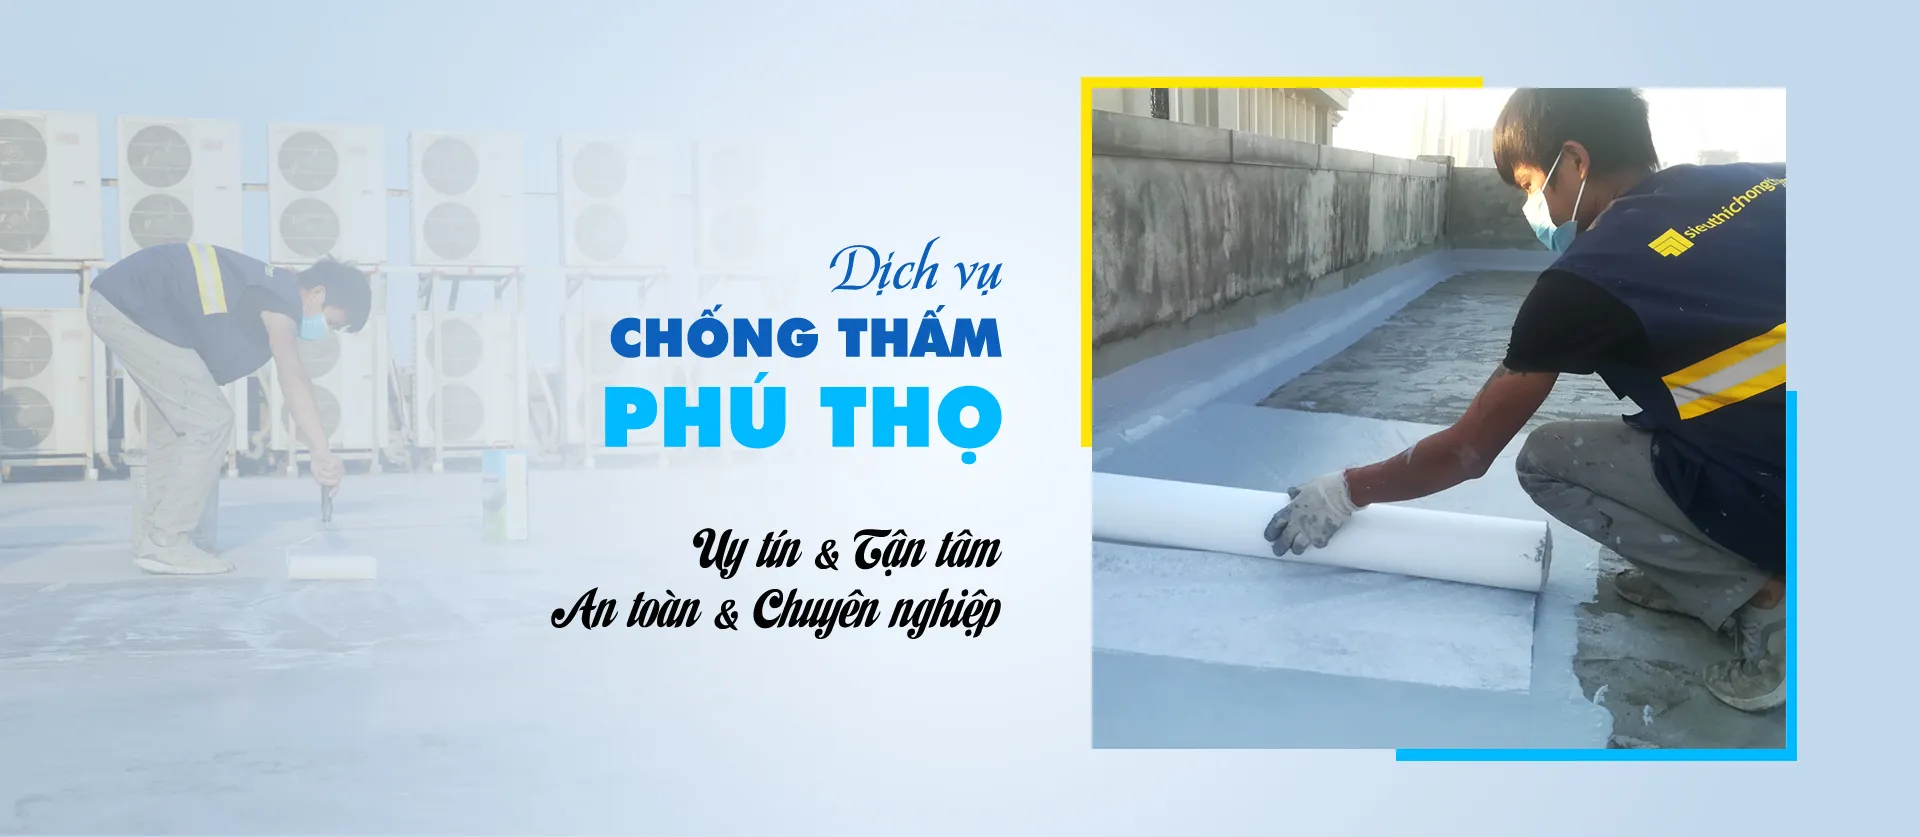 Phu Tho